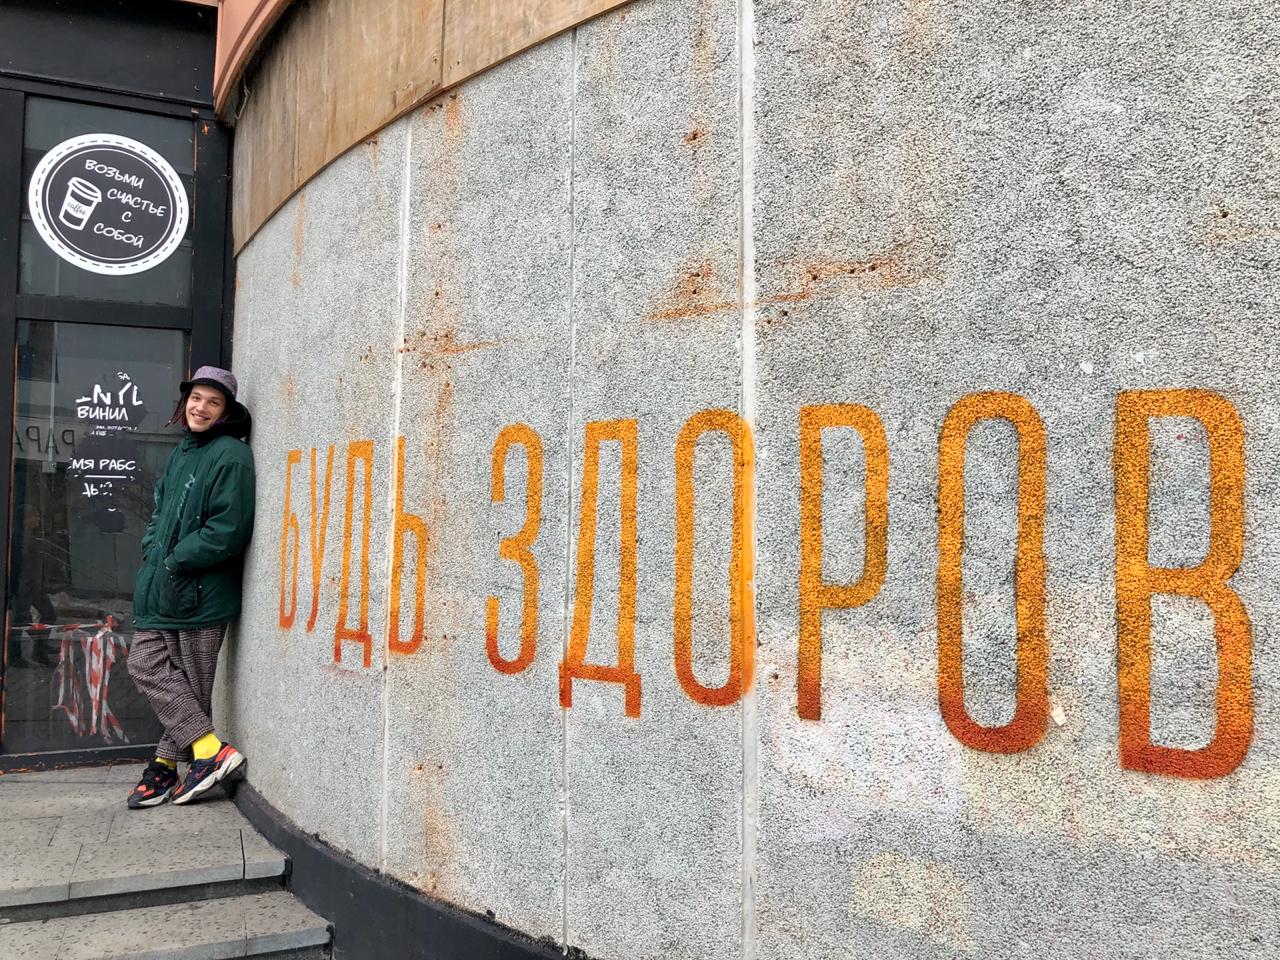 На здоровье! В центре Екатеринбурга появилось граффити против коронавируса